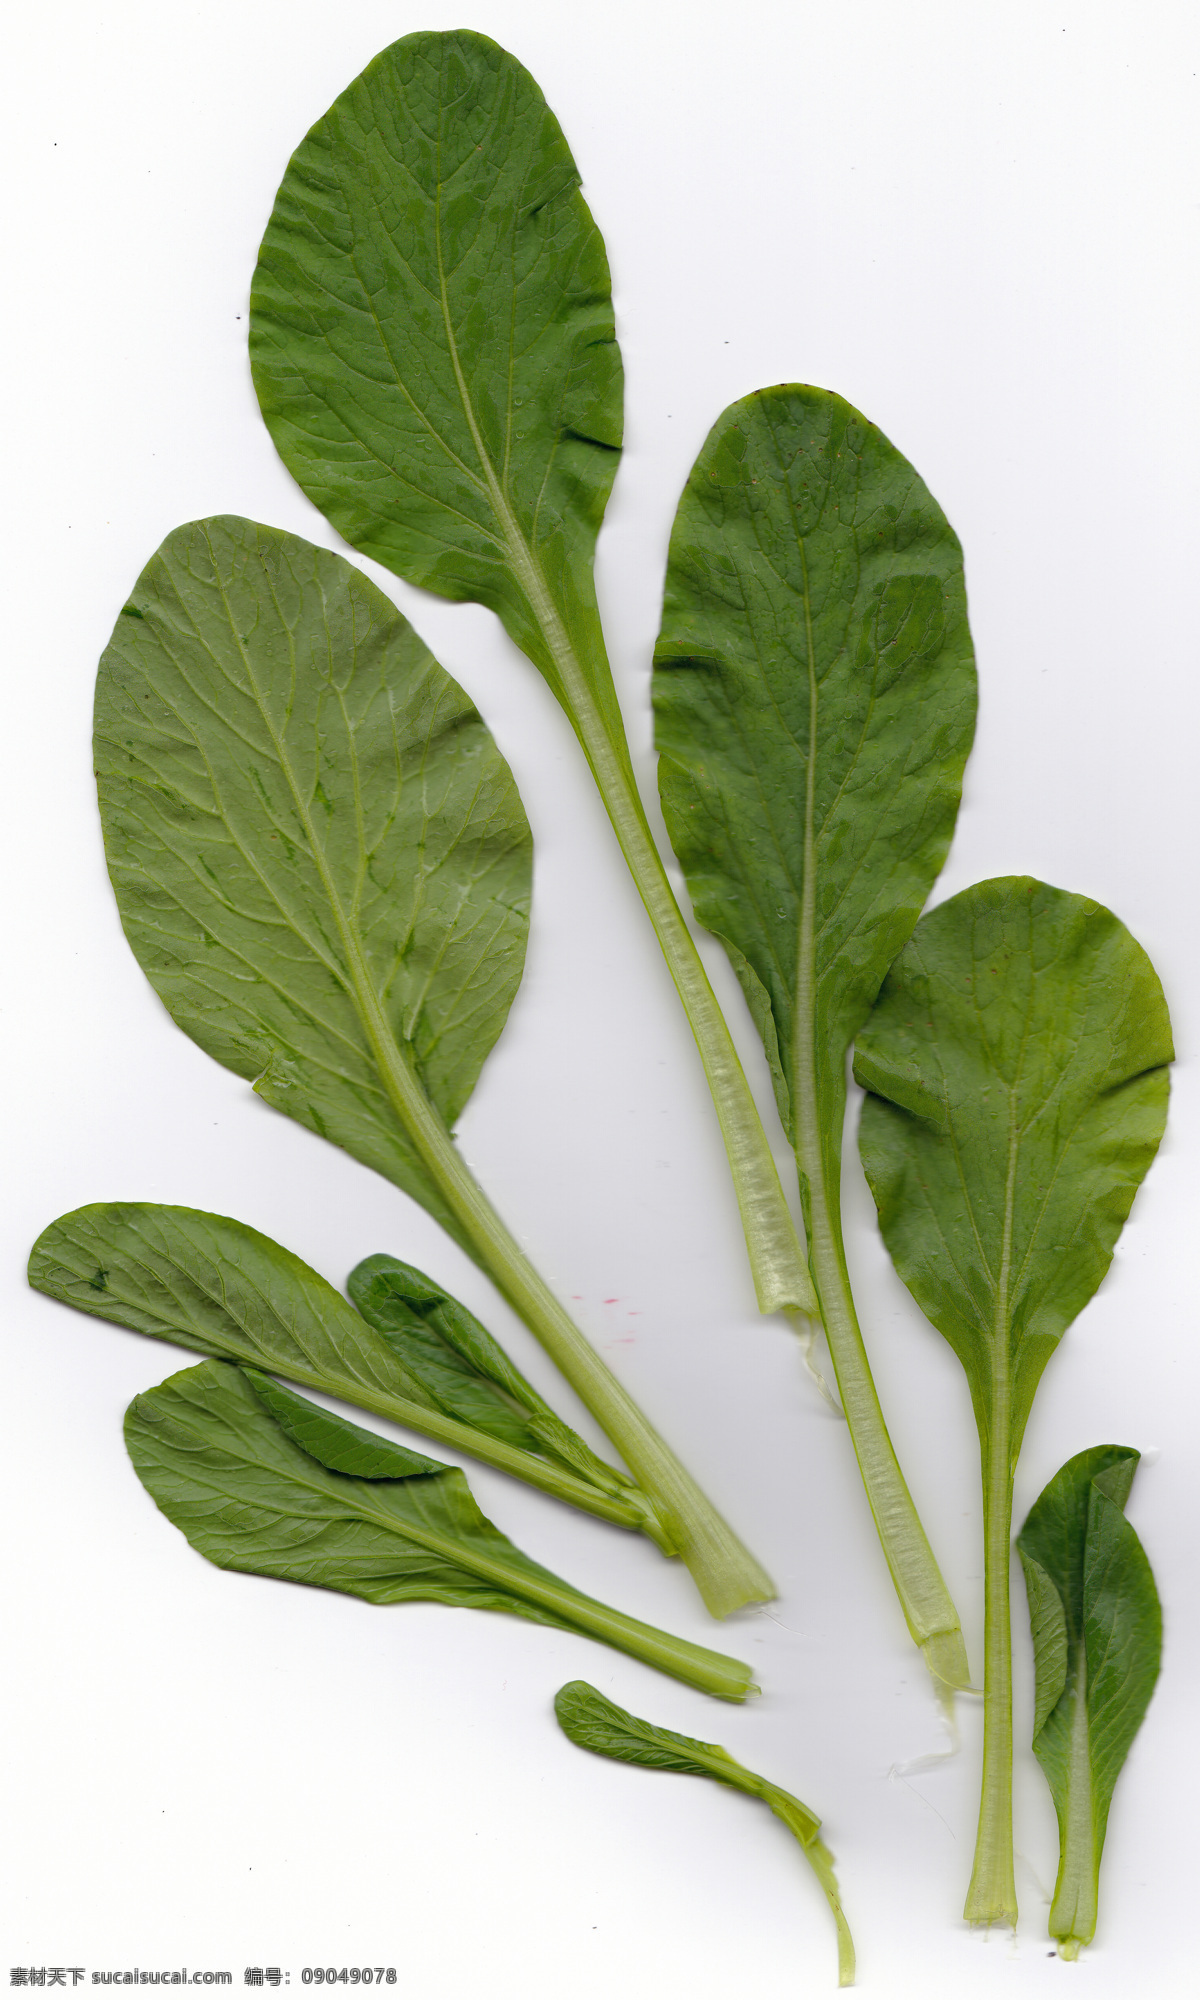 小白菜 叶子 肌理 小白菜叶子 小白菜素材 叶子素材 叶子肌理 肌理纹理底纹 生物世界 蔬菜